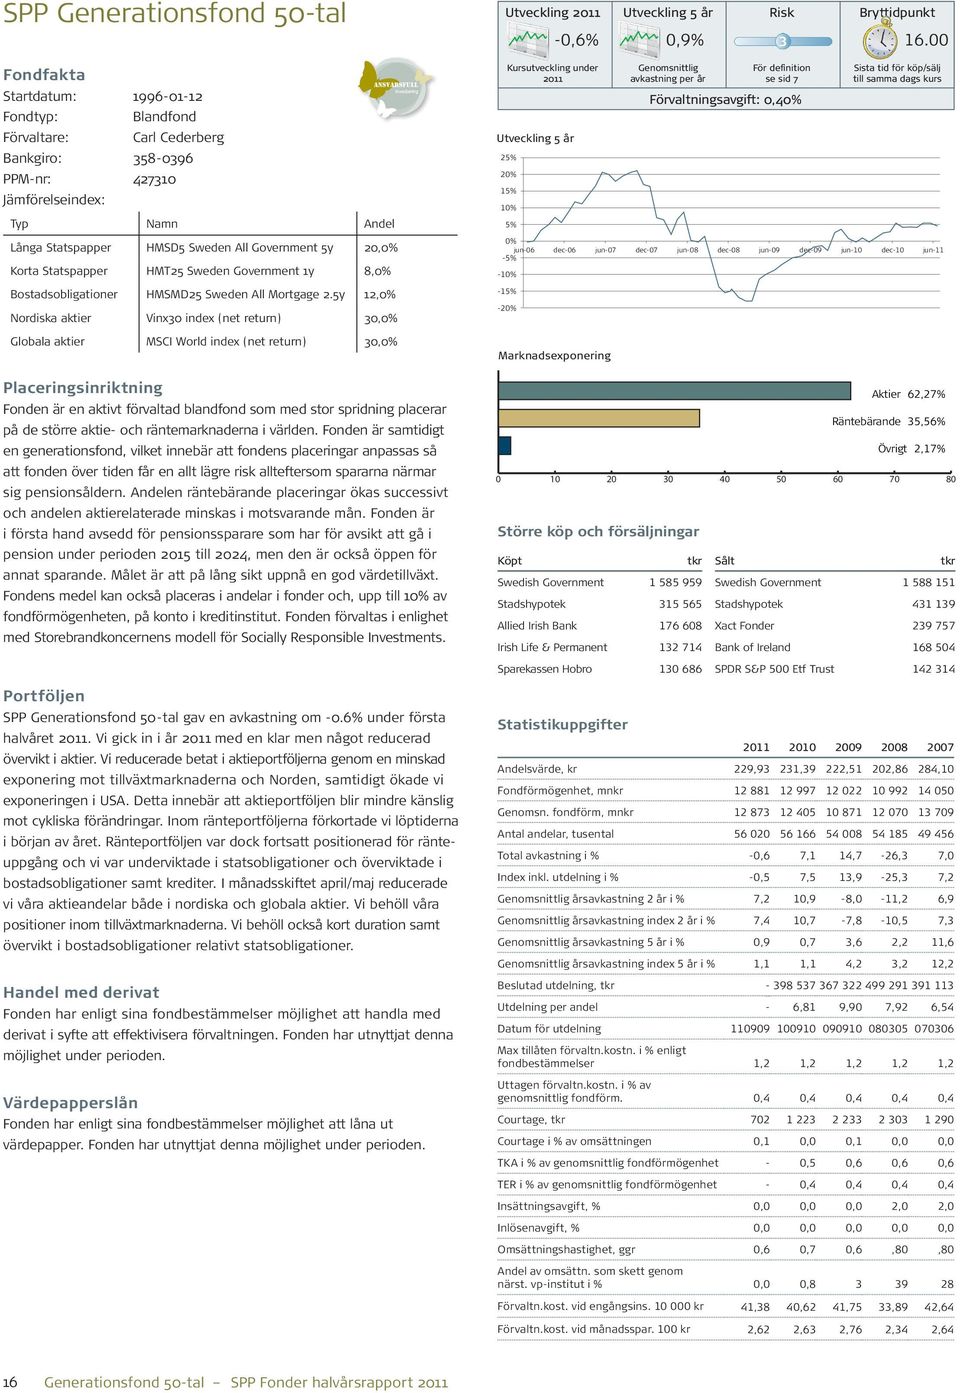 5y 12,0% Nordiska aktier Vinx30 index (net return) 30,0% Globala aktier MSCI World index (net return) 30,0% Placeringsinriktning Fonden är en aktivt förvaltad blandfond som med stor spridning